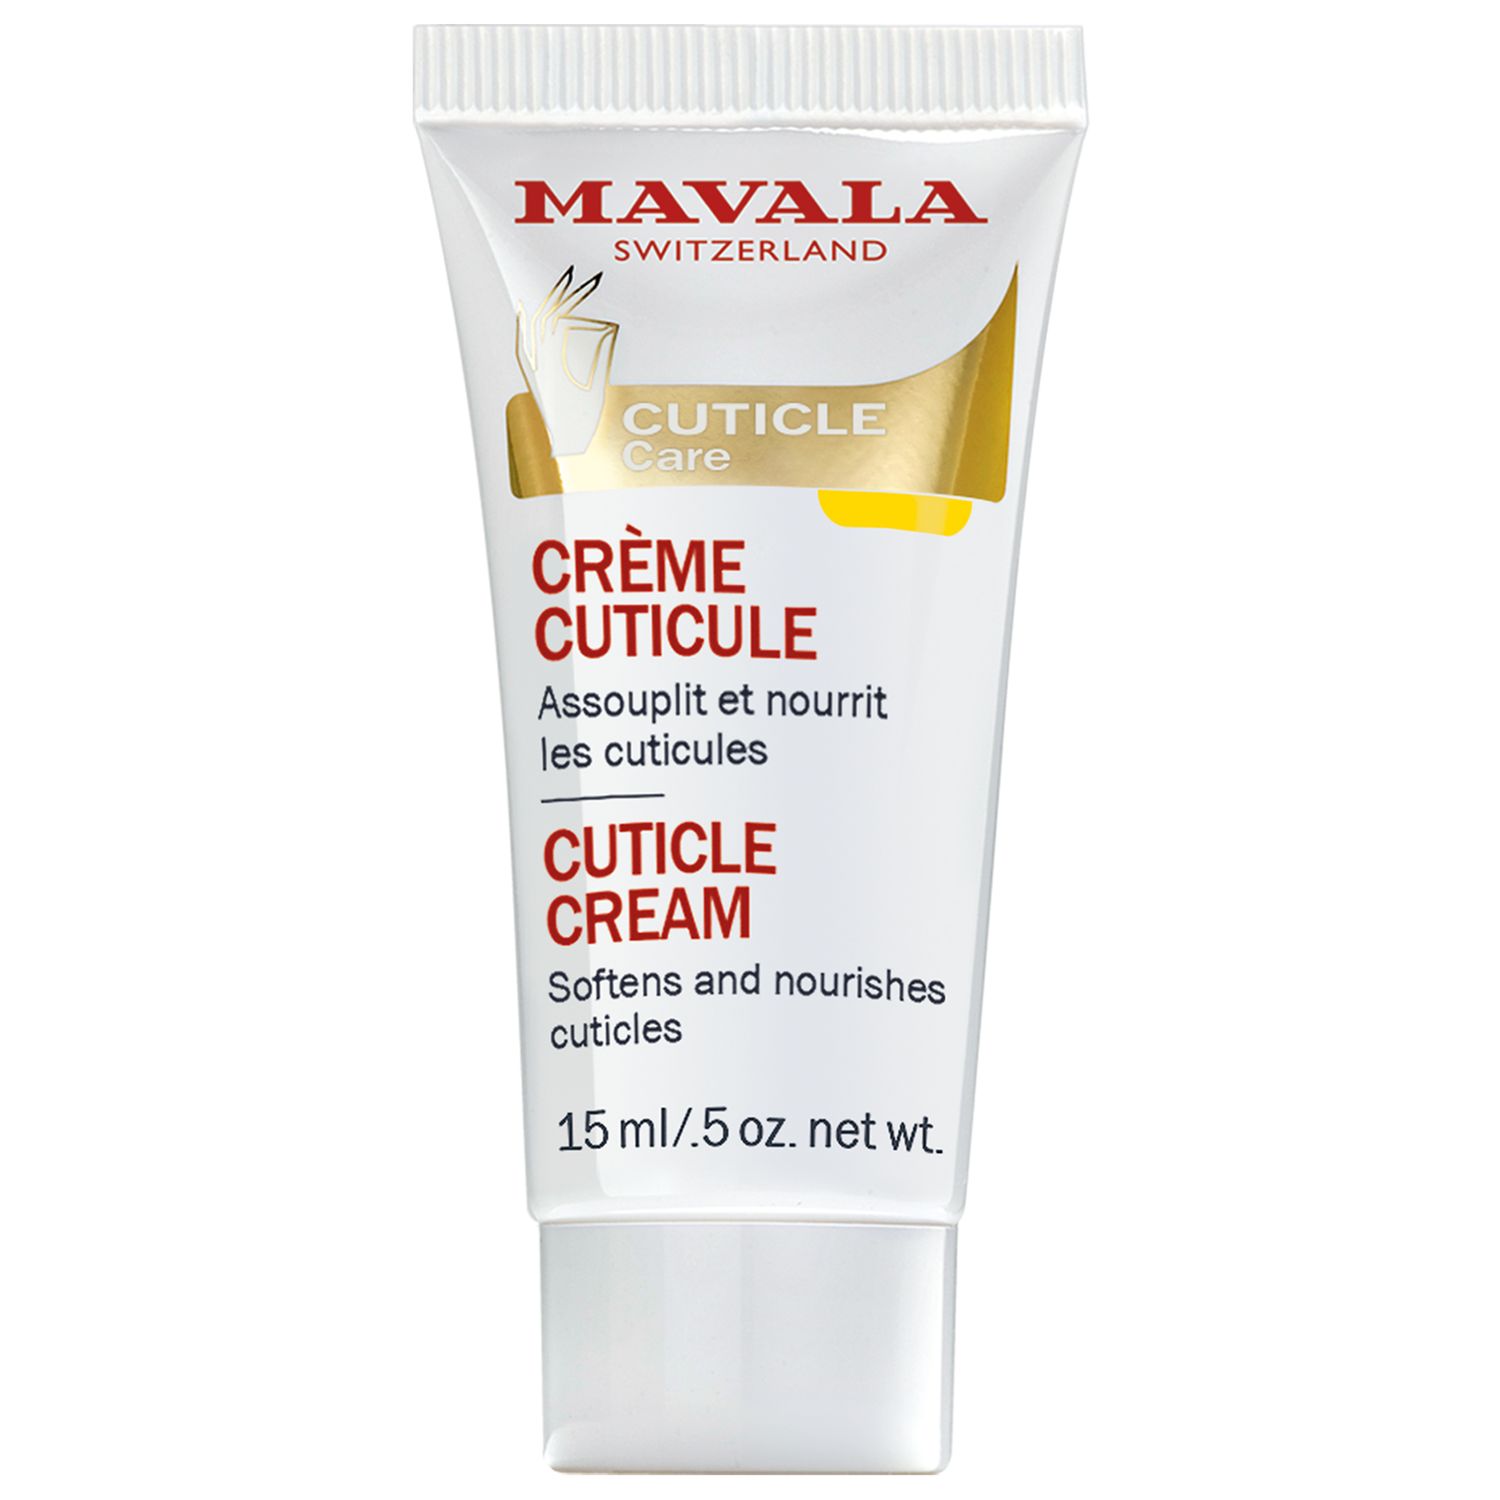 Mavala Cuticle Cream, 15ml 2